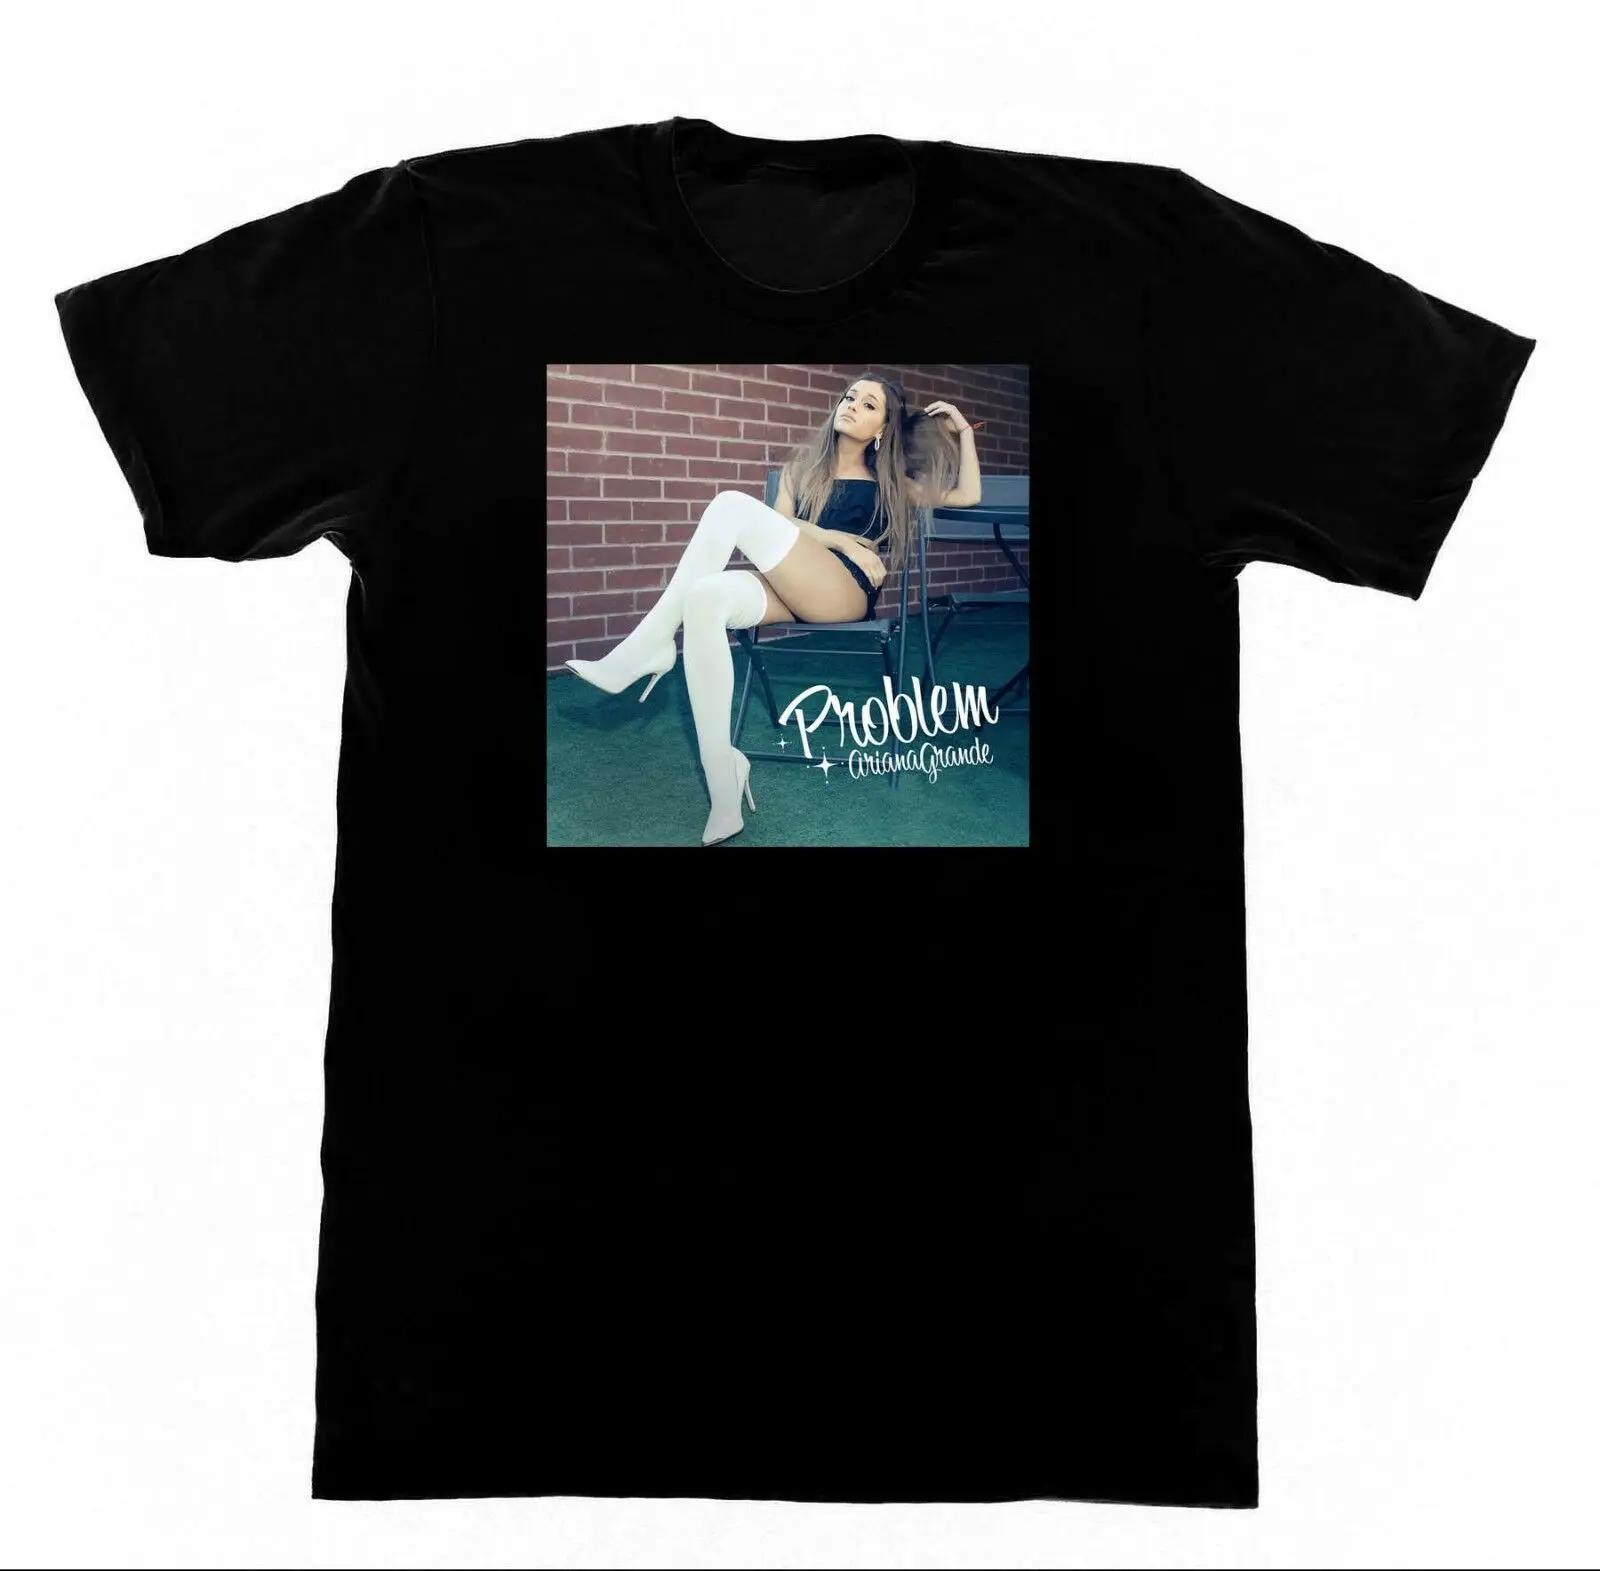 Ариана Гранде-проблема с M83 футболка подарок футболка с принтом, в стиле «хип-хоп» футболка новые футболки arrival Летняя мужская футболка